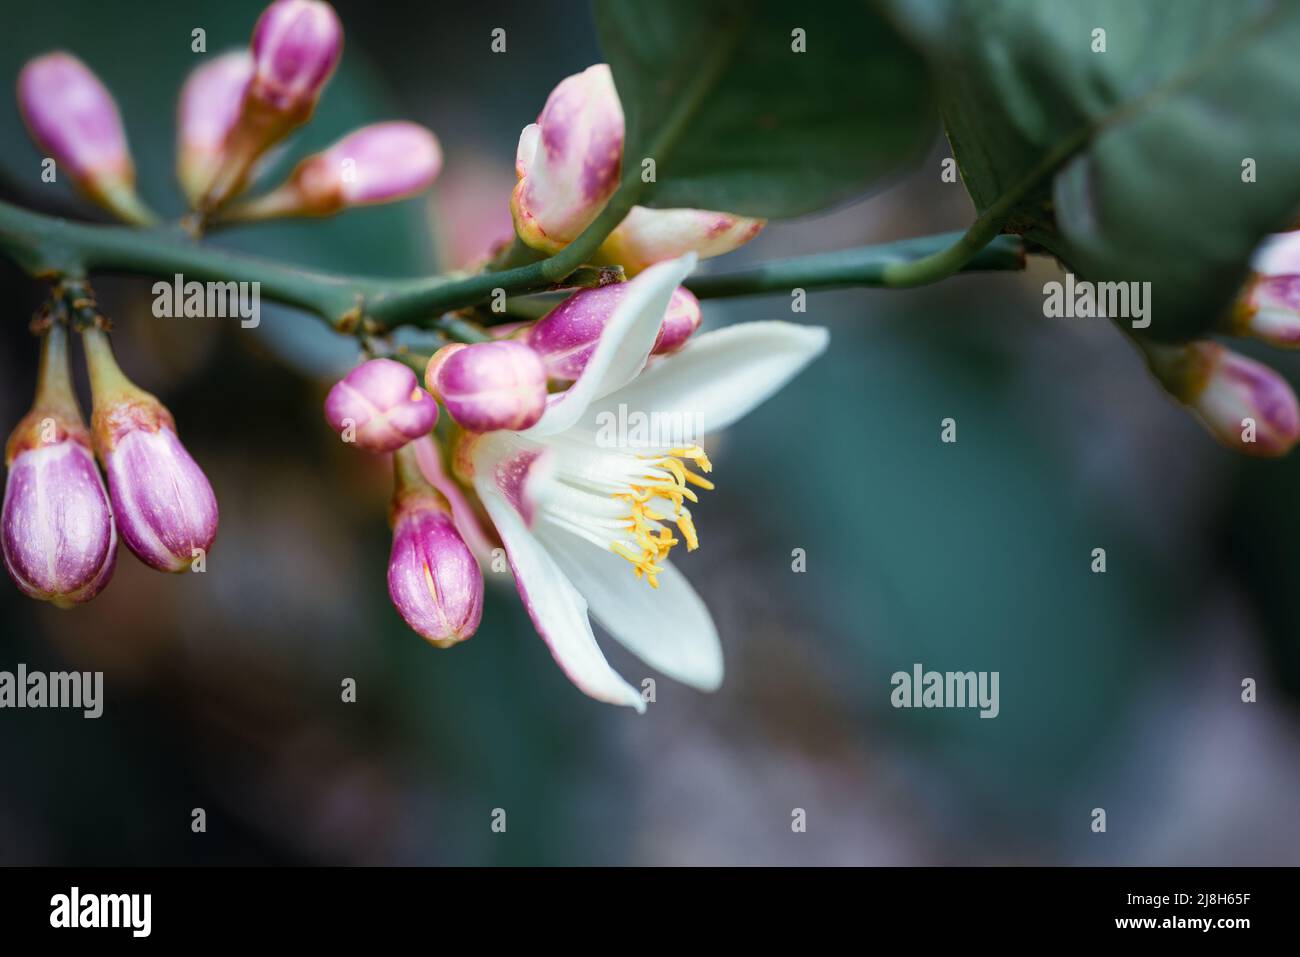 Macro-photographie de fleurs d'agrumes roses et blanches en gros plan. Photo de haute qualité Banque D'Images